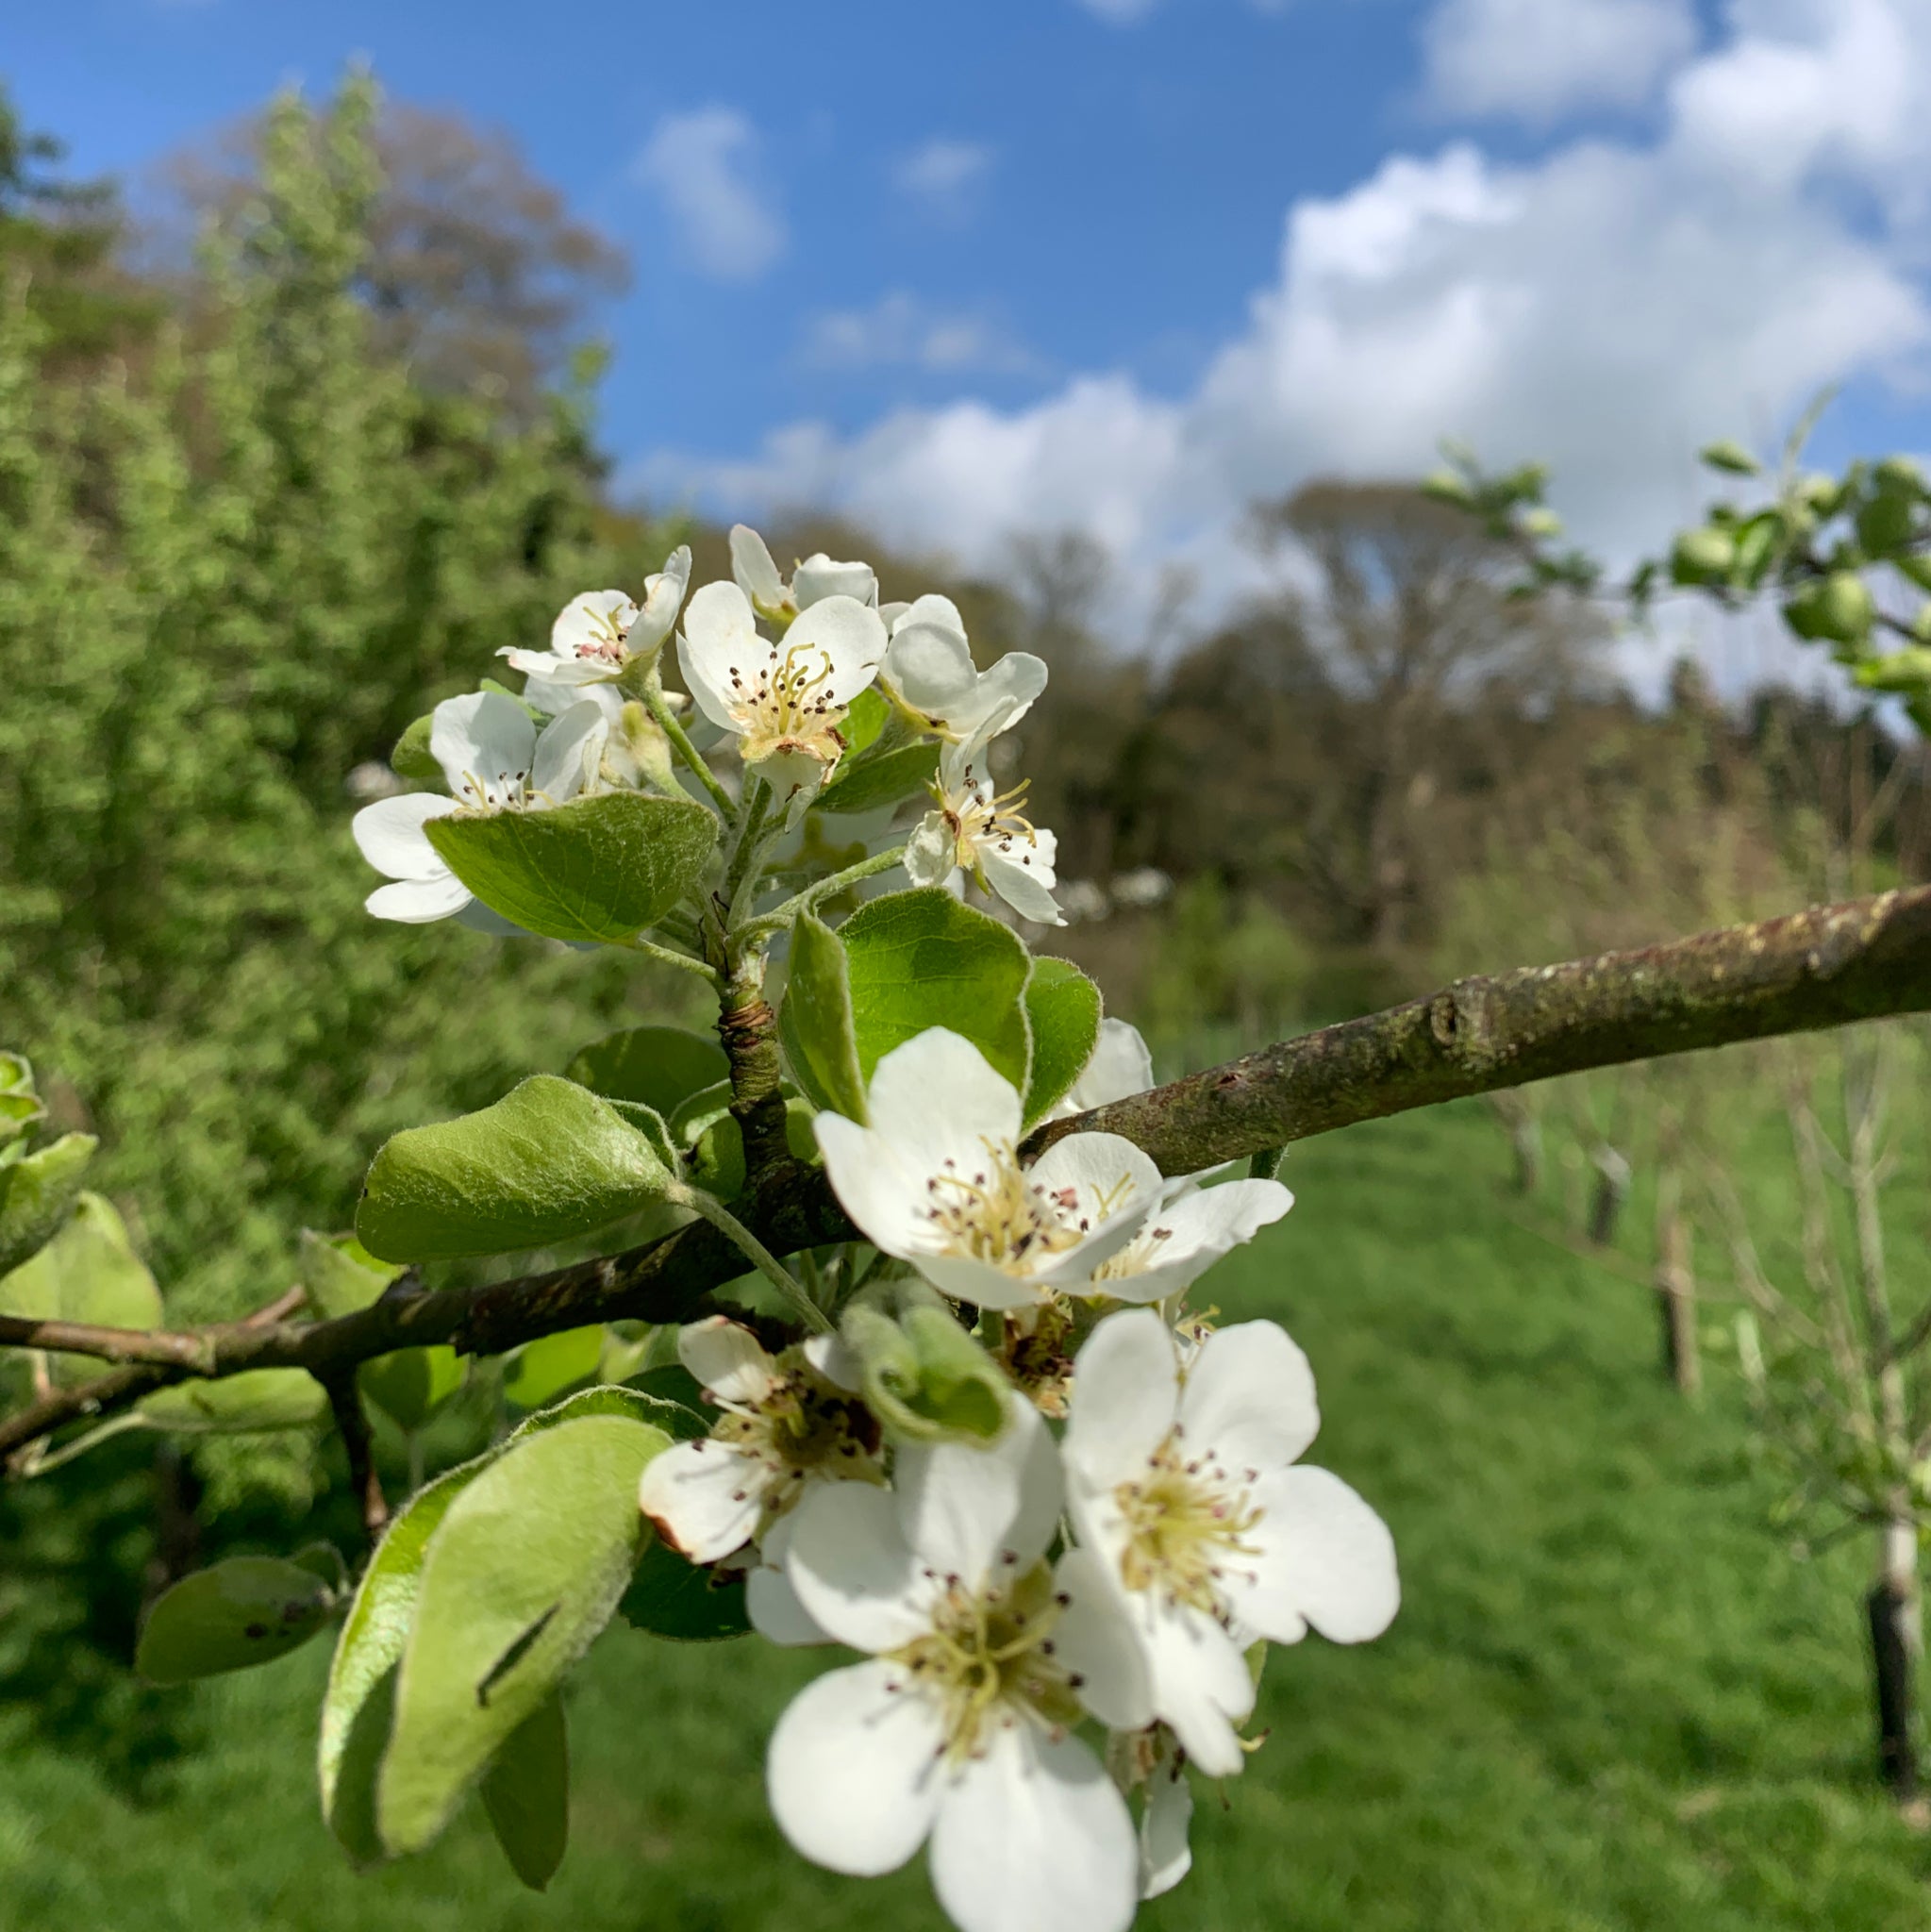 Rhydlydan pear tree blossom